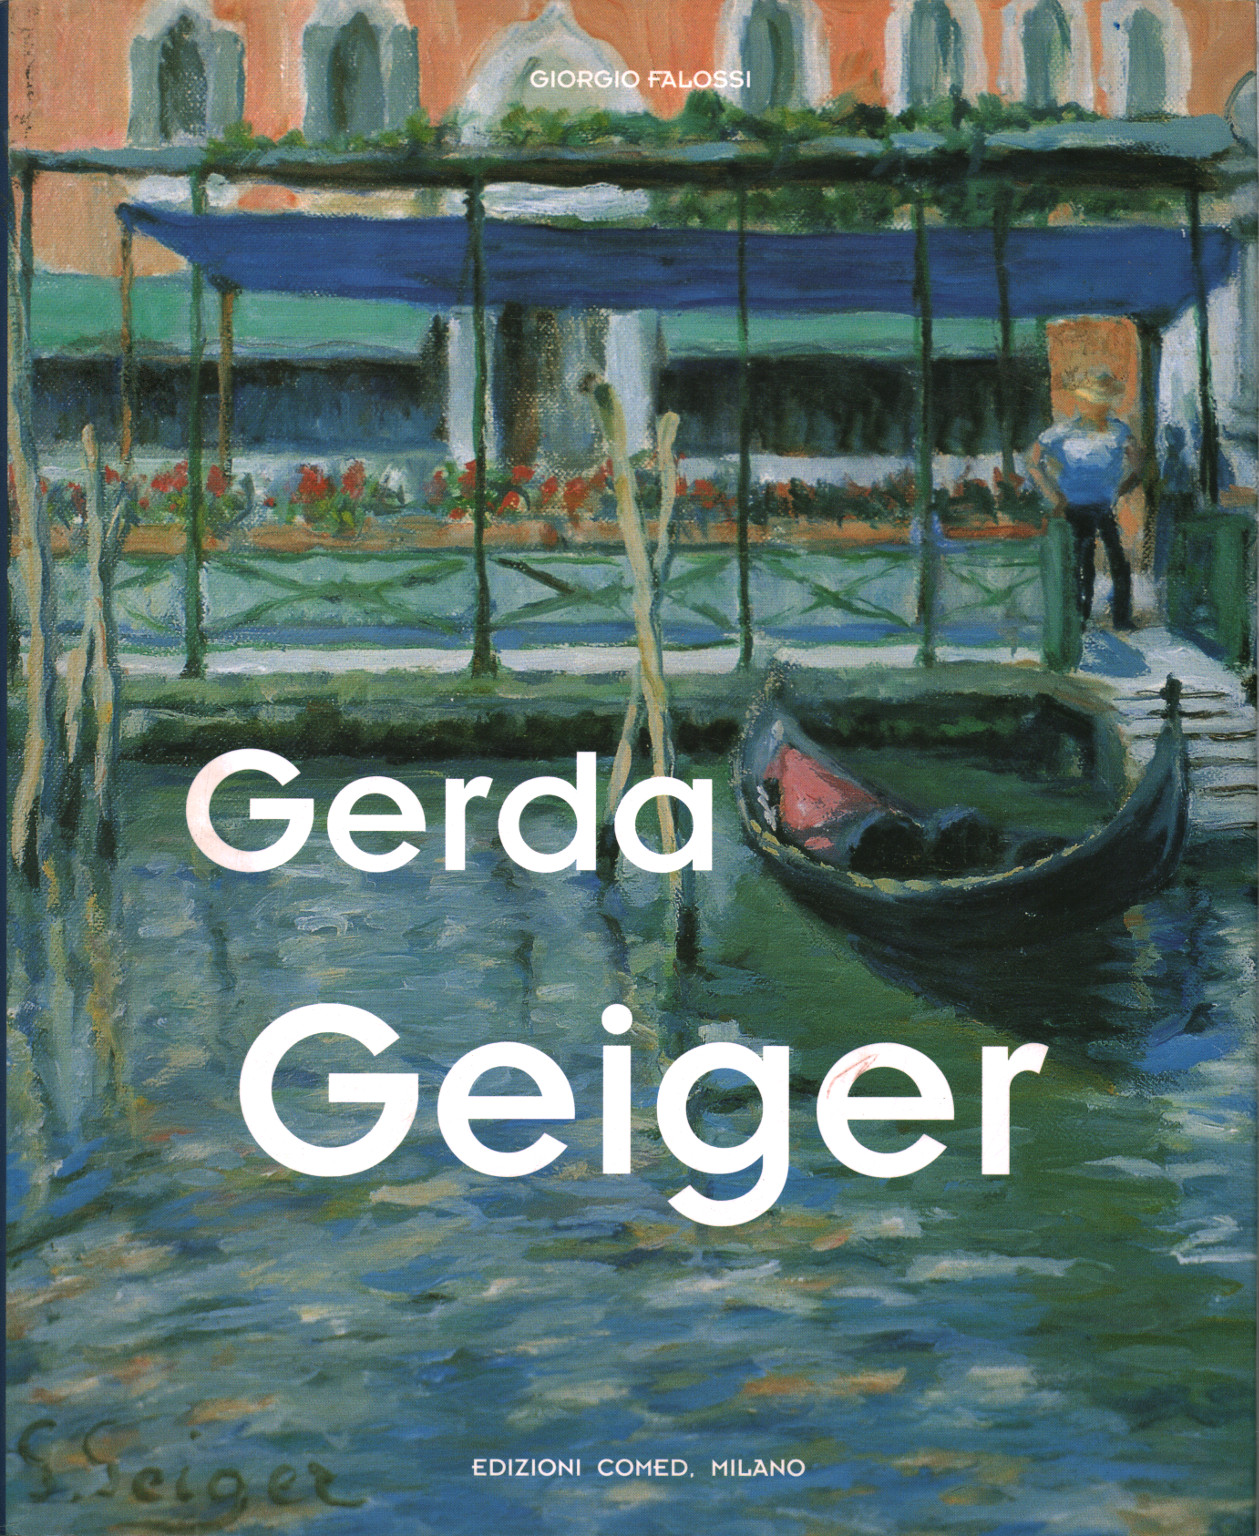 Gerda Geiger, s.zu.